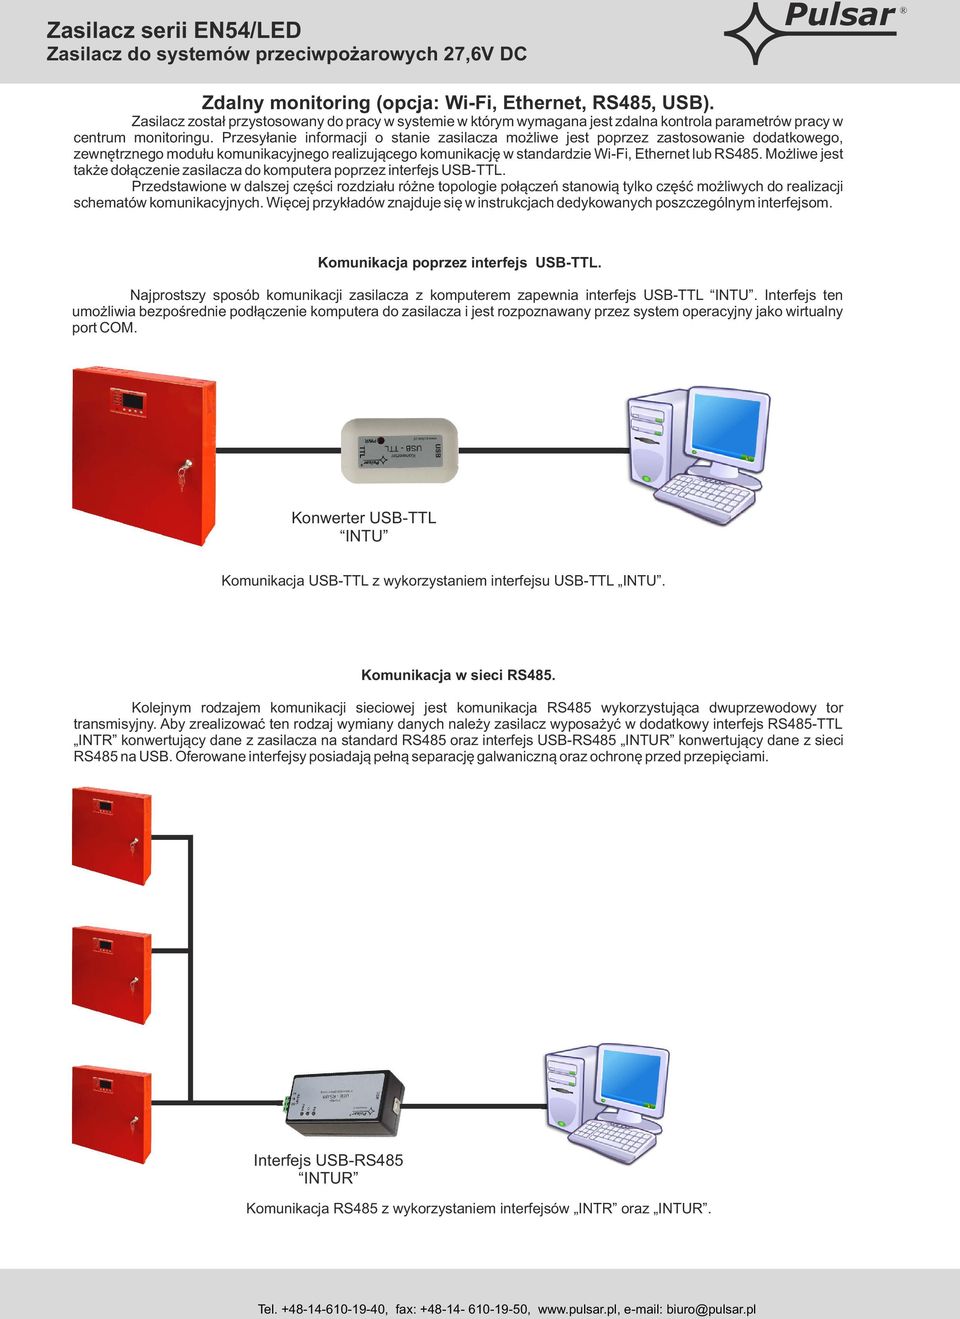 Możliwe jest także dołączenie zasilacza do komputera poprzez interfejs USB-TTL.